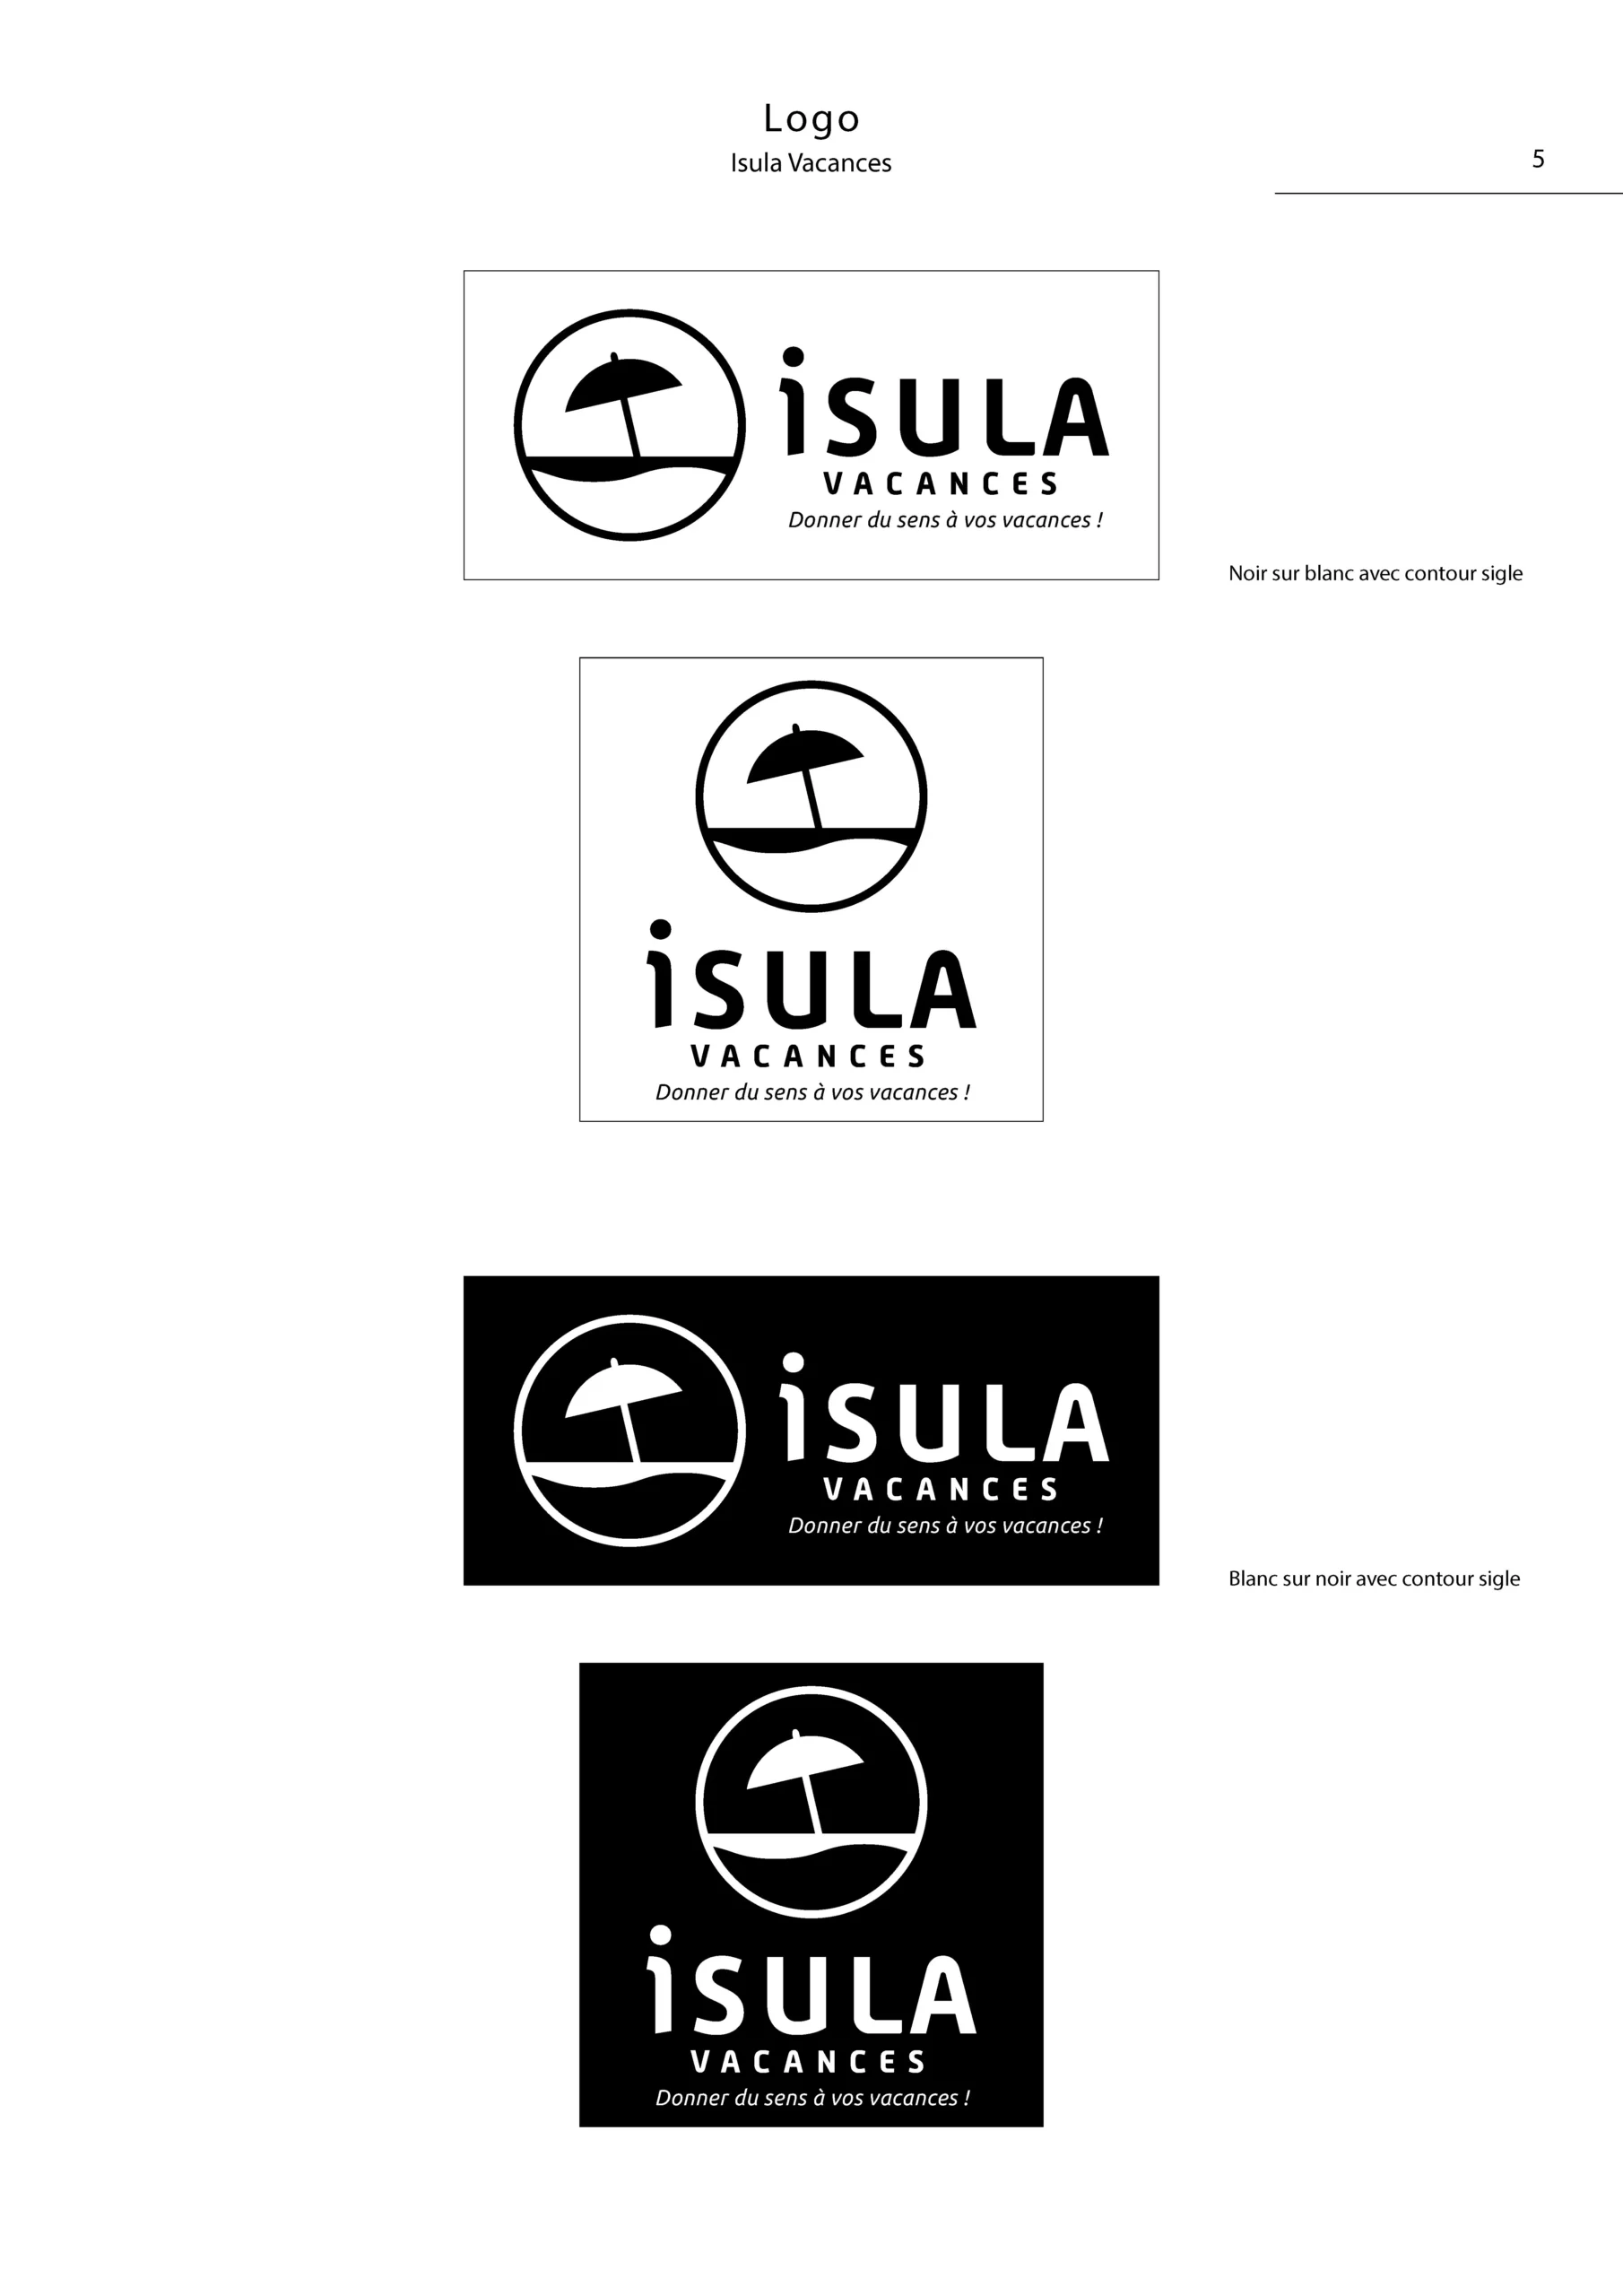 Charte graphique simplifiée du logo Isula Vacances Page 5